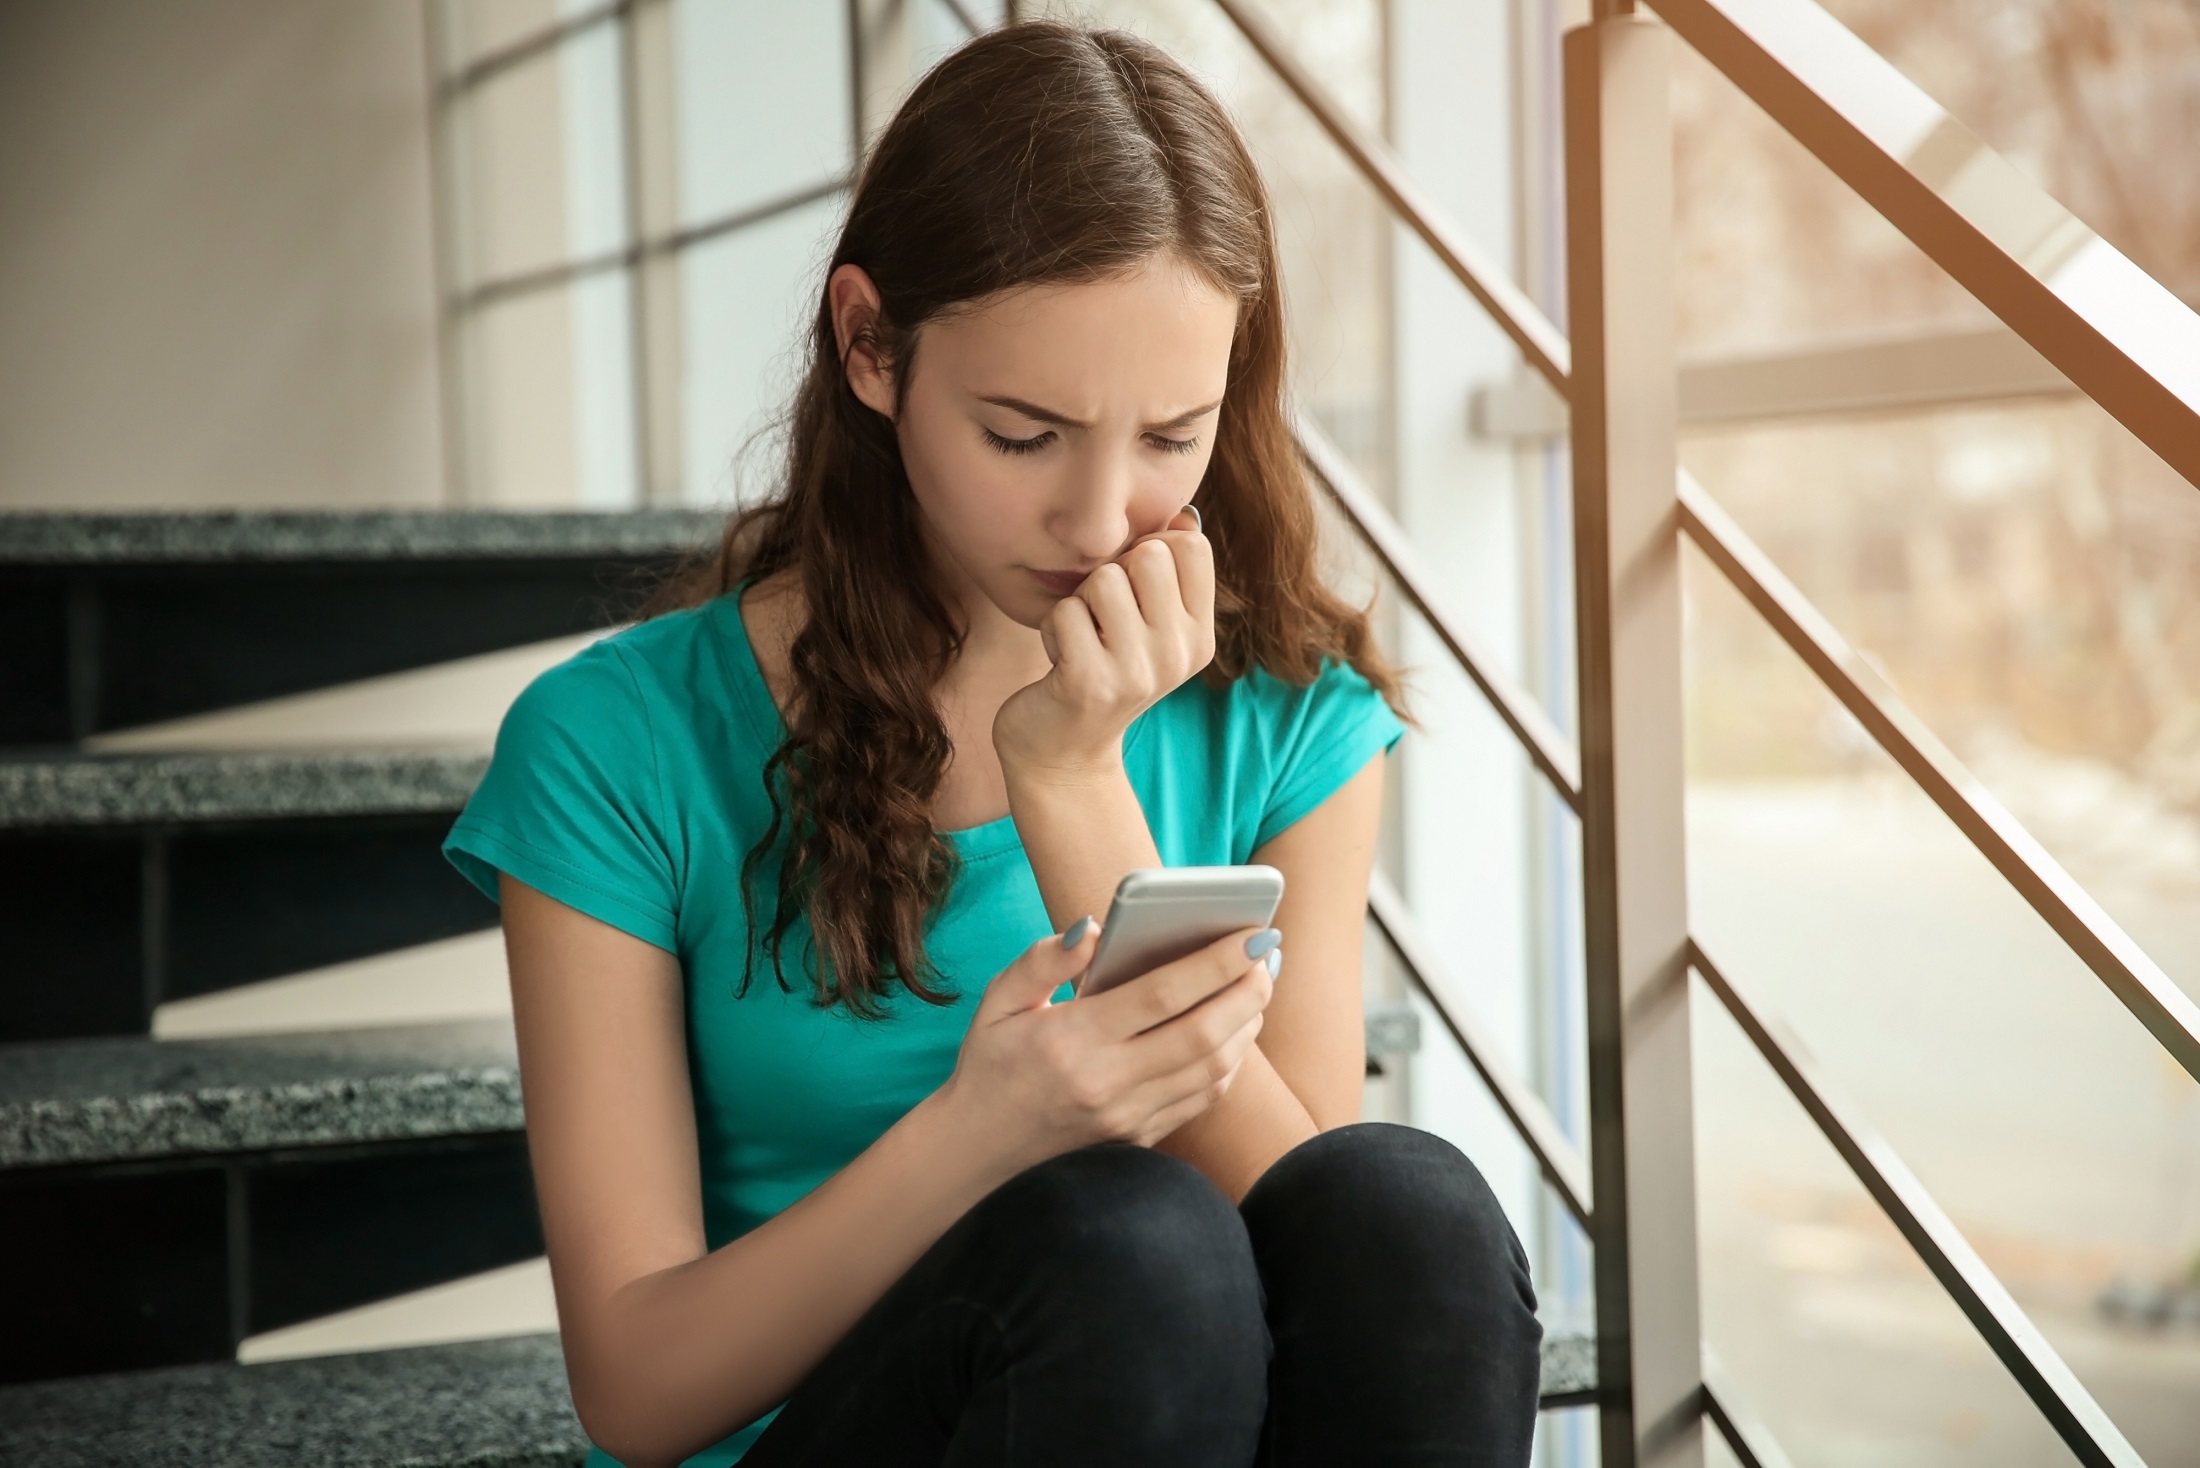 Un tercio de los jóvenes manifiesta signos de 'falta de control' en el uso del móvil